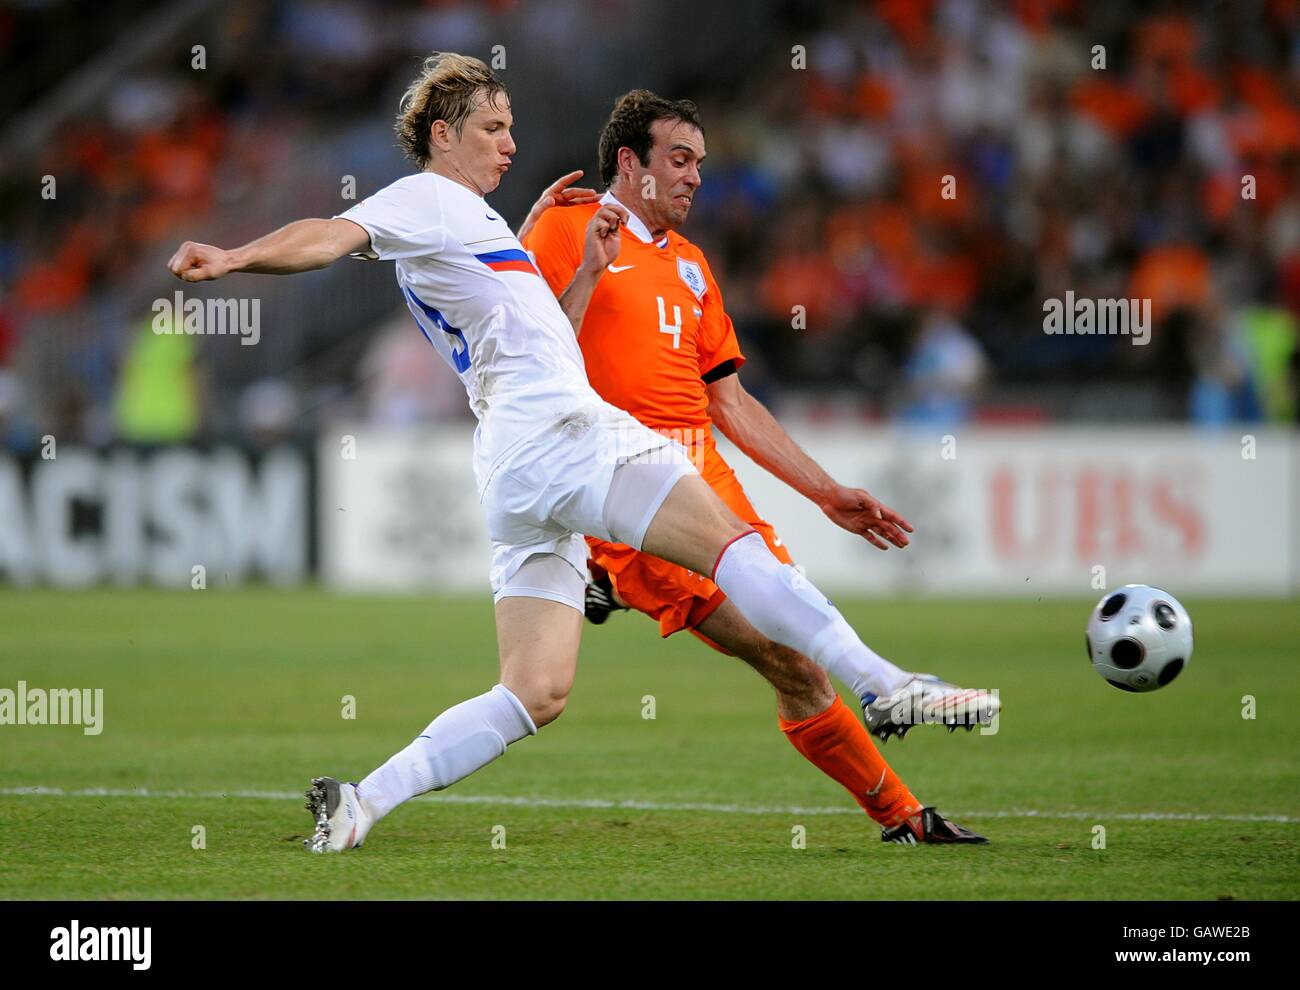 Russia's Roman Pavlyuchenko (left) and Holland's Joris Mathijsen battle for the ball. Stock Photo